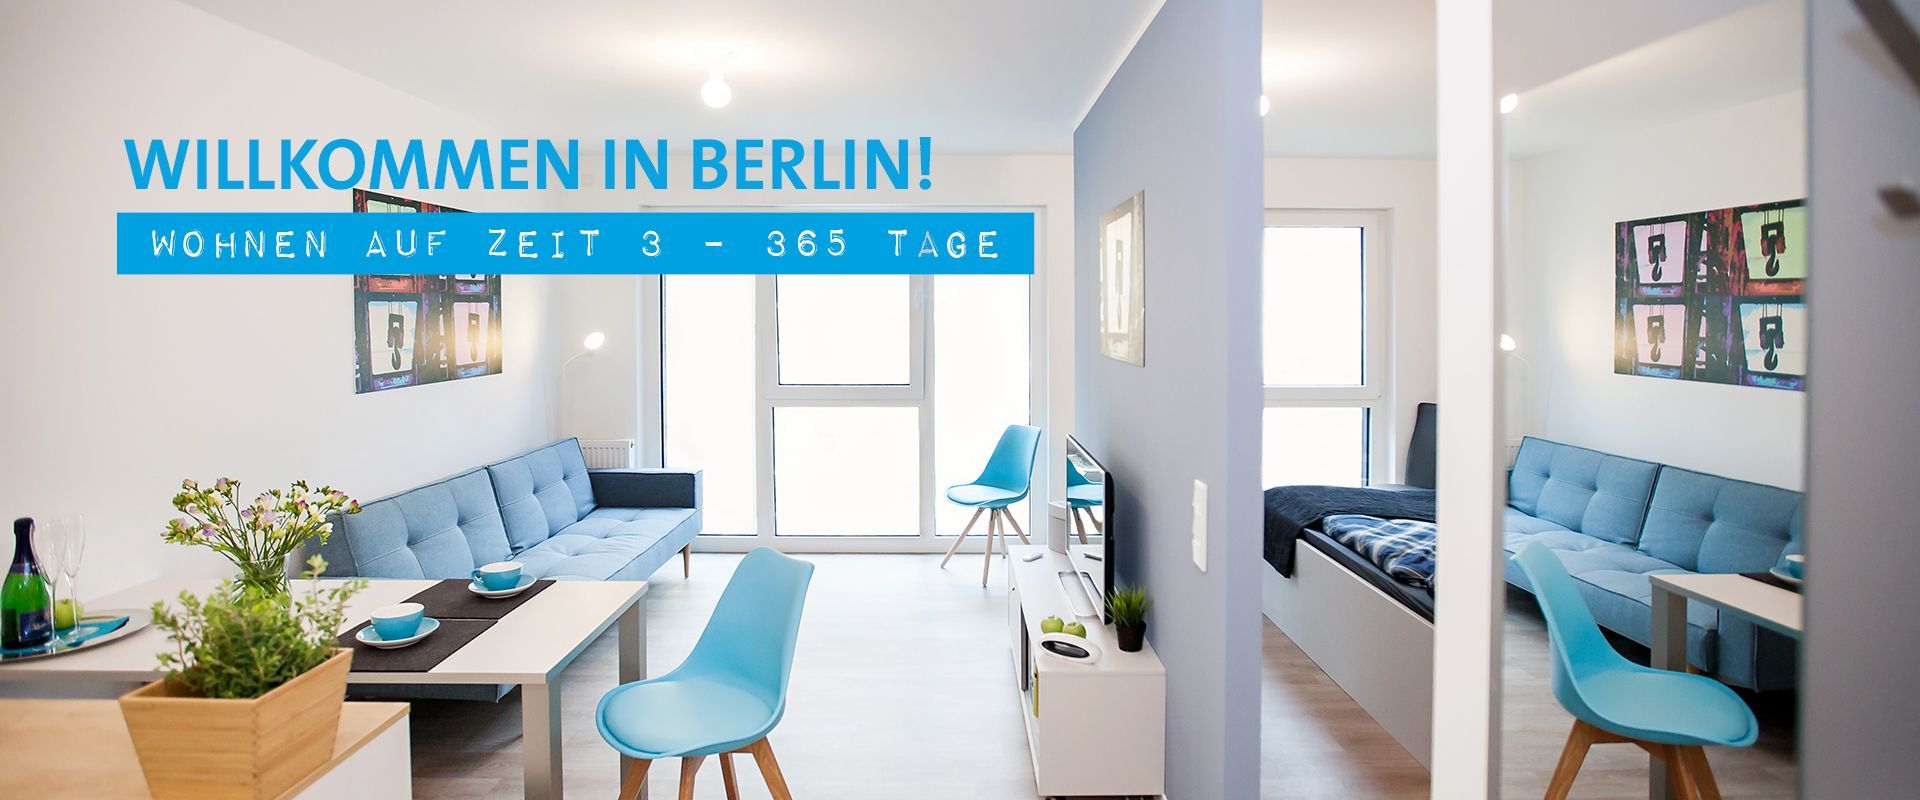 Willkommen in Berlin - Wohnen auf Zeit 7 - 365 Tage